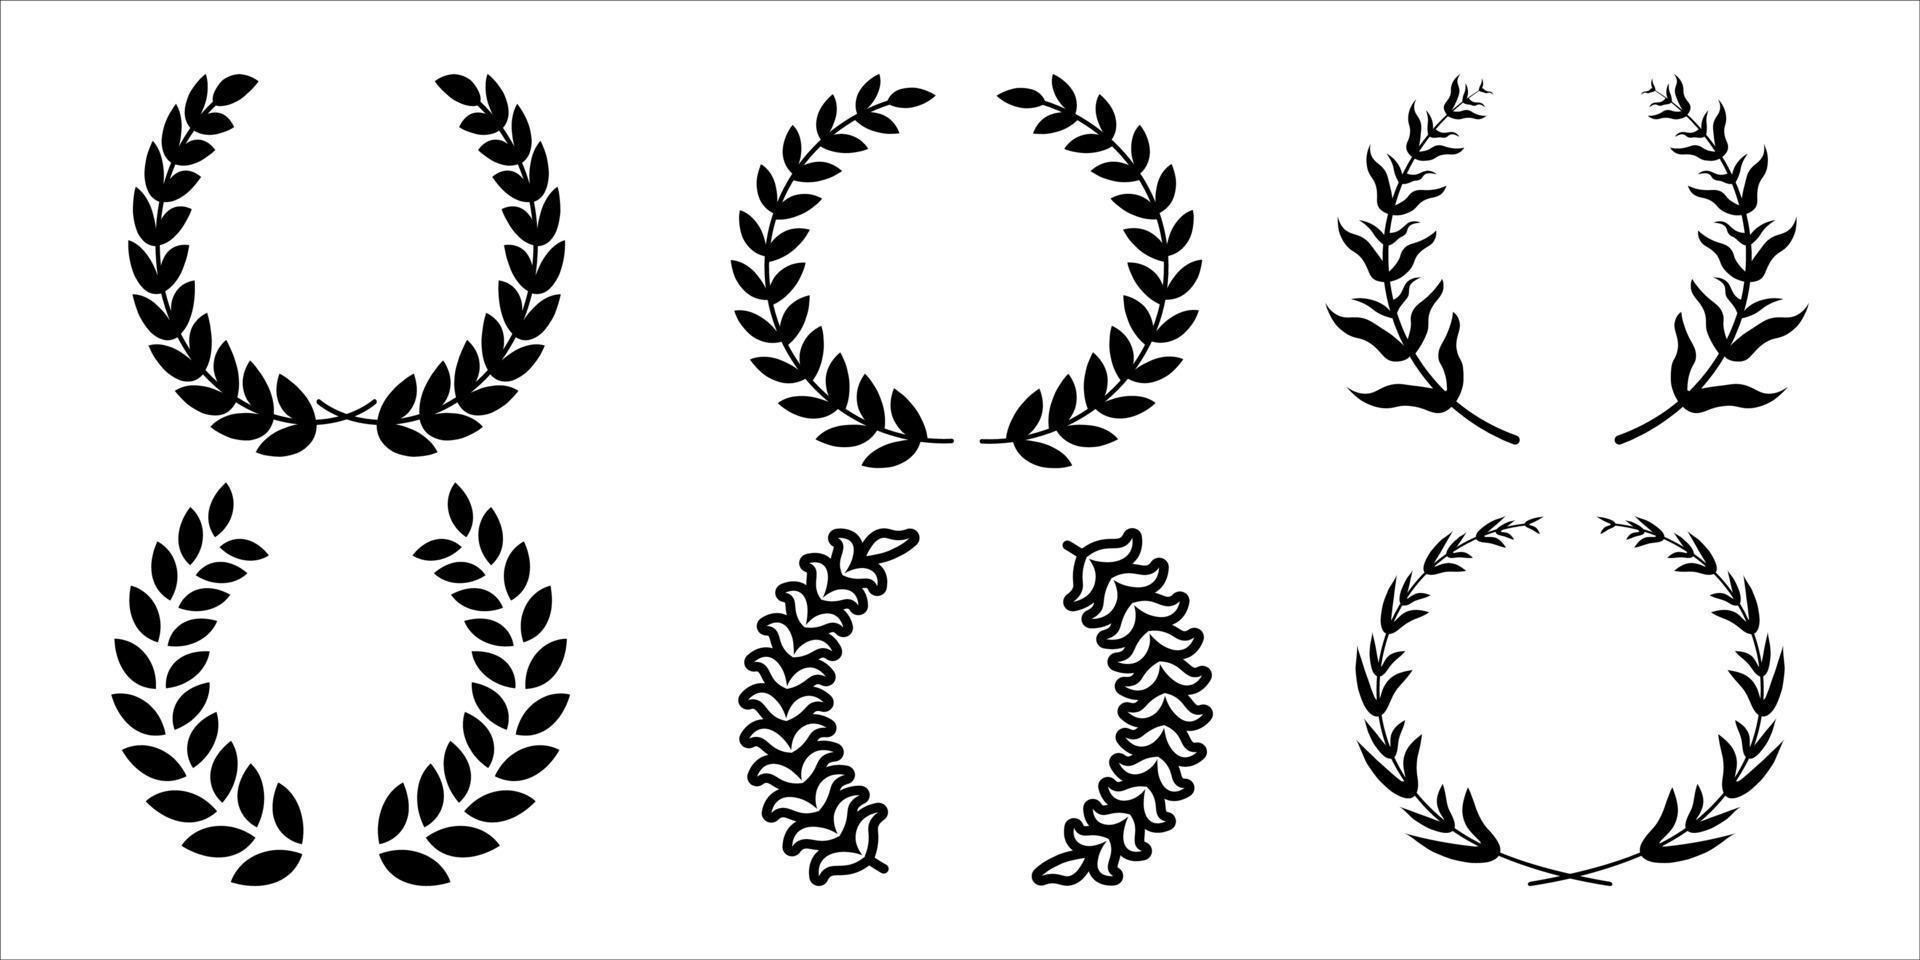 ensemble de couronnes de feuilles de laurier et de chêne circulaires à silhouette noire et blanche représentant un prix, une réalisation, une héraldique, une noblesse. illustration vectorielle. vecteur